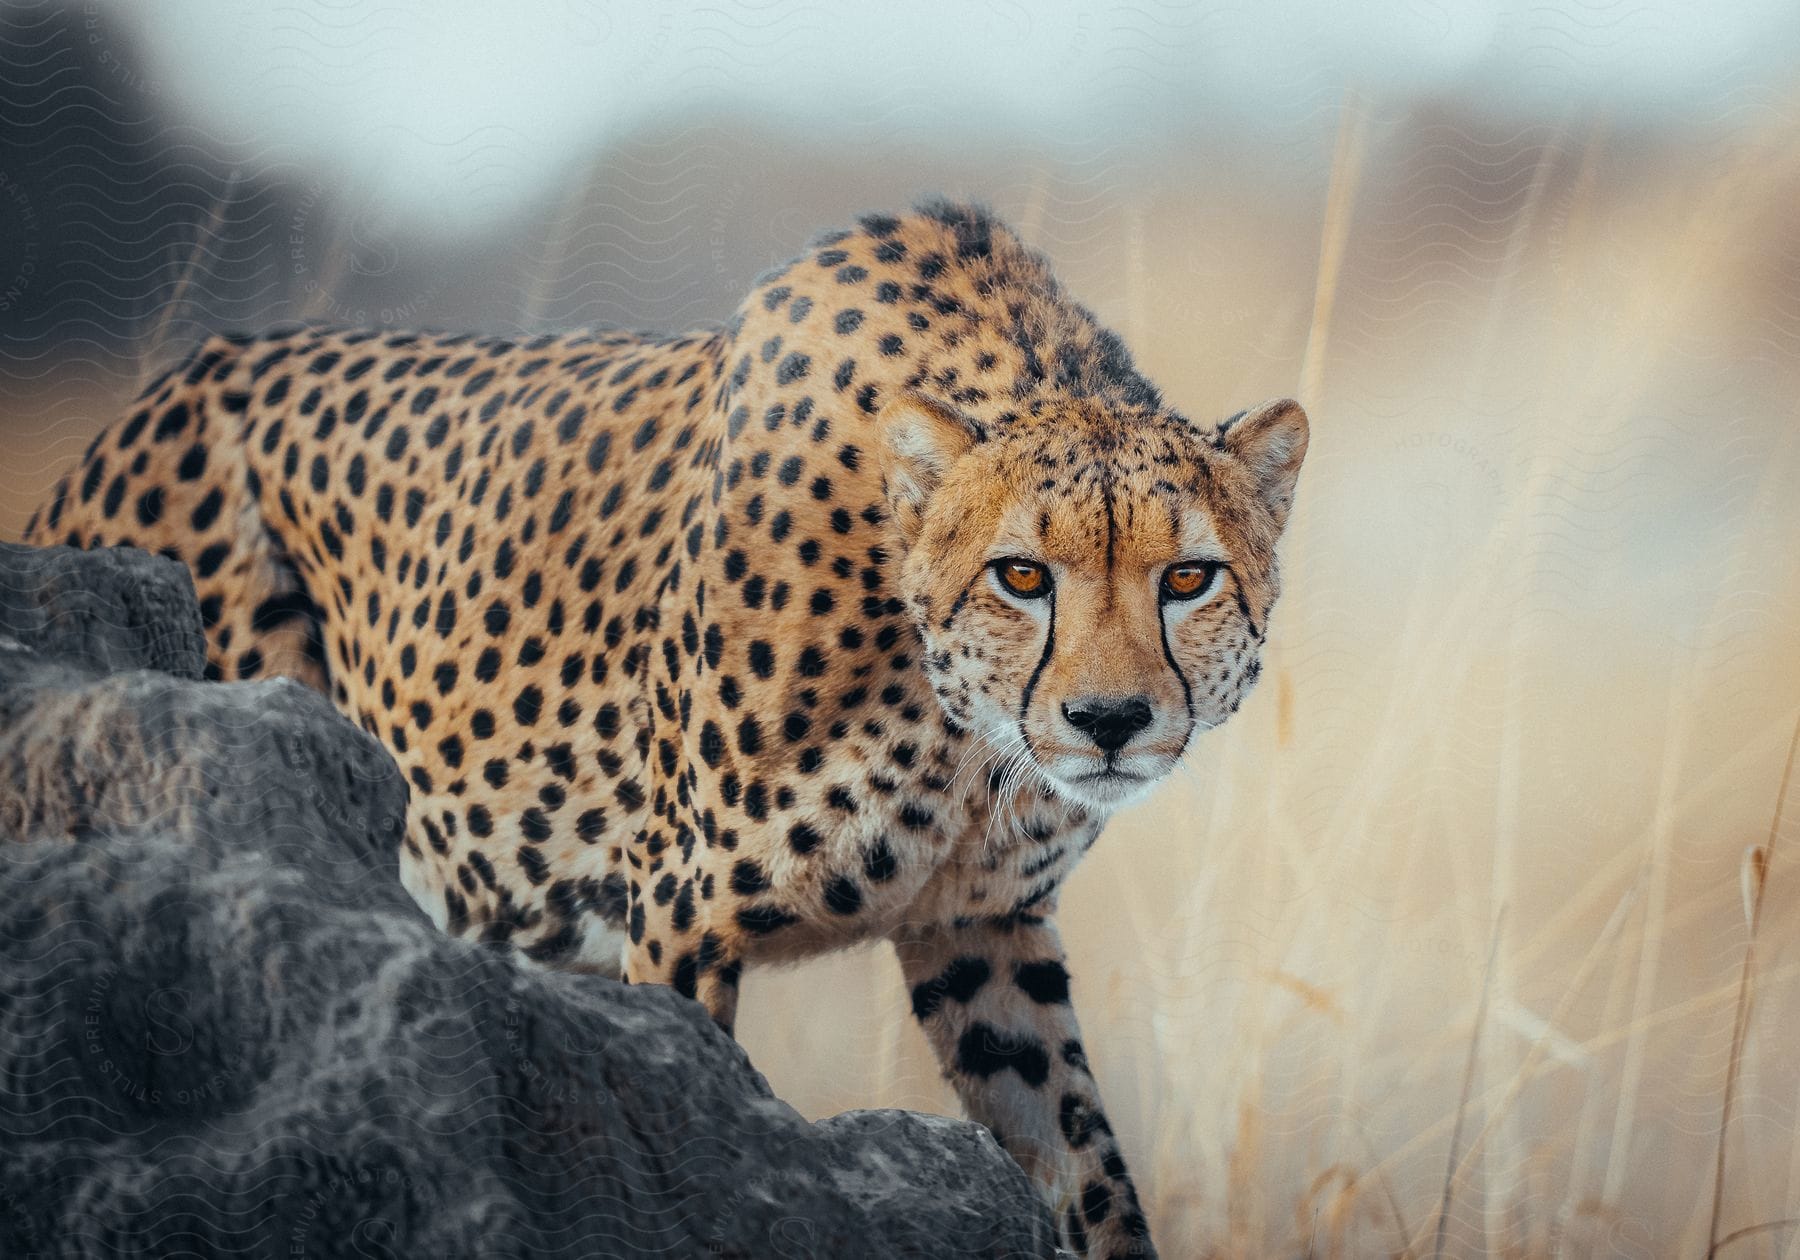 A leopard walks near rocks looking ahead